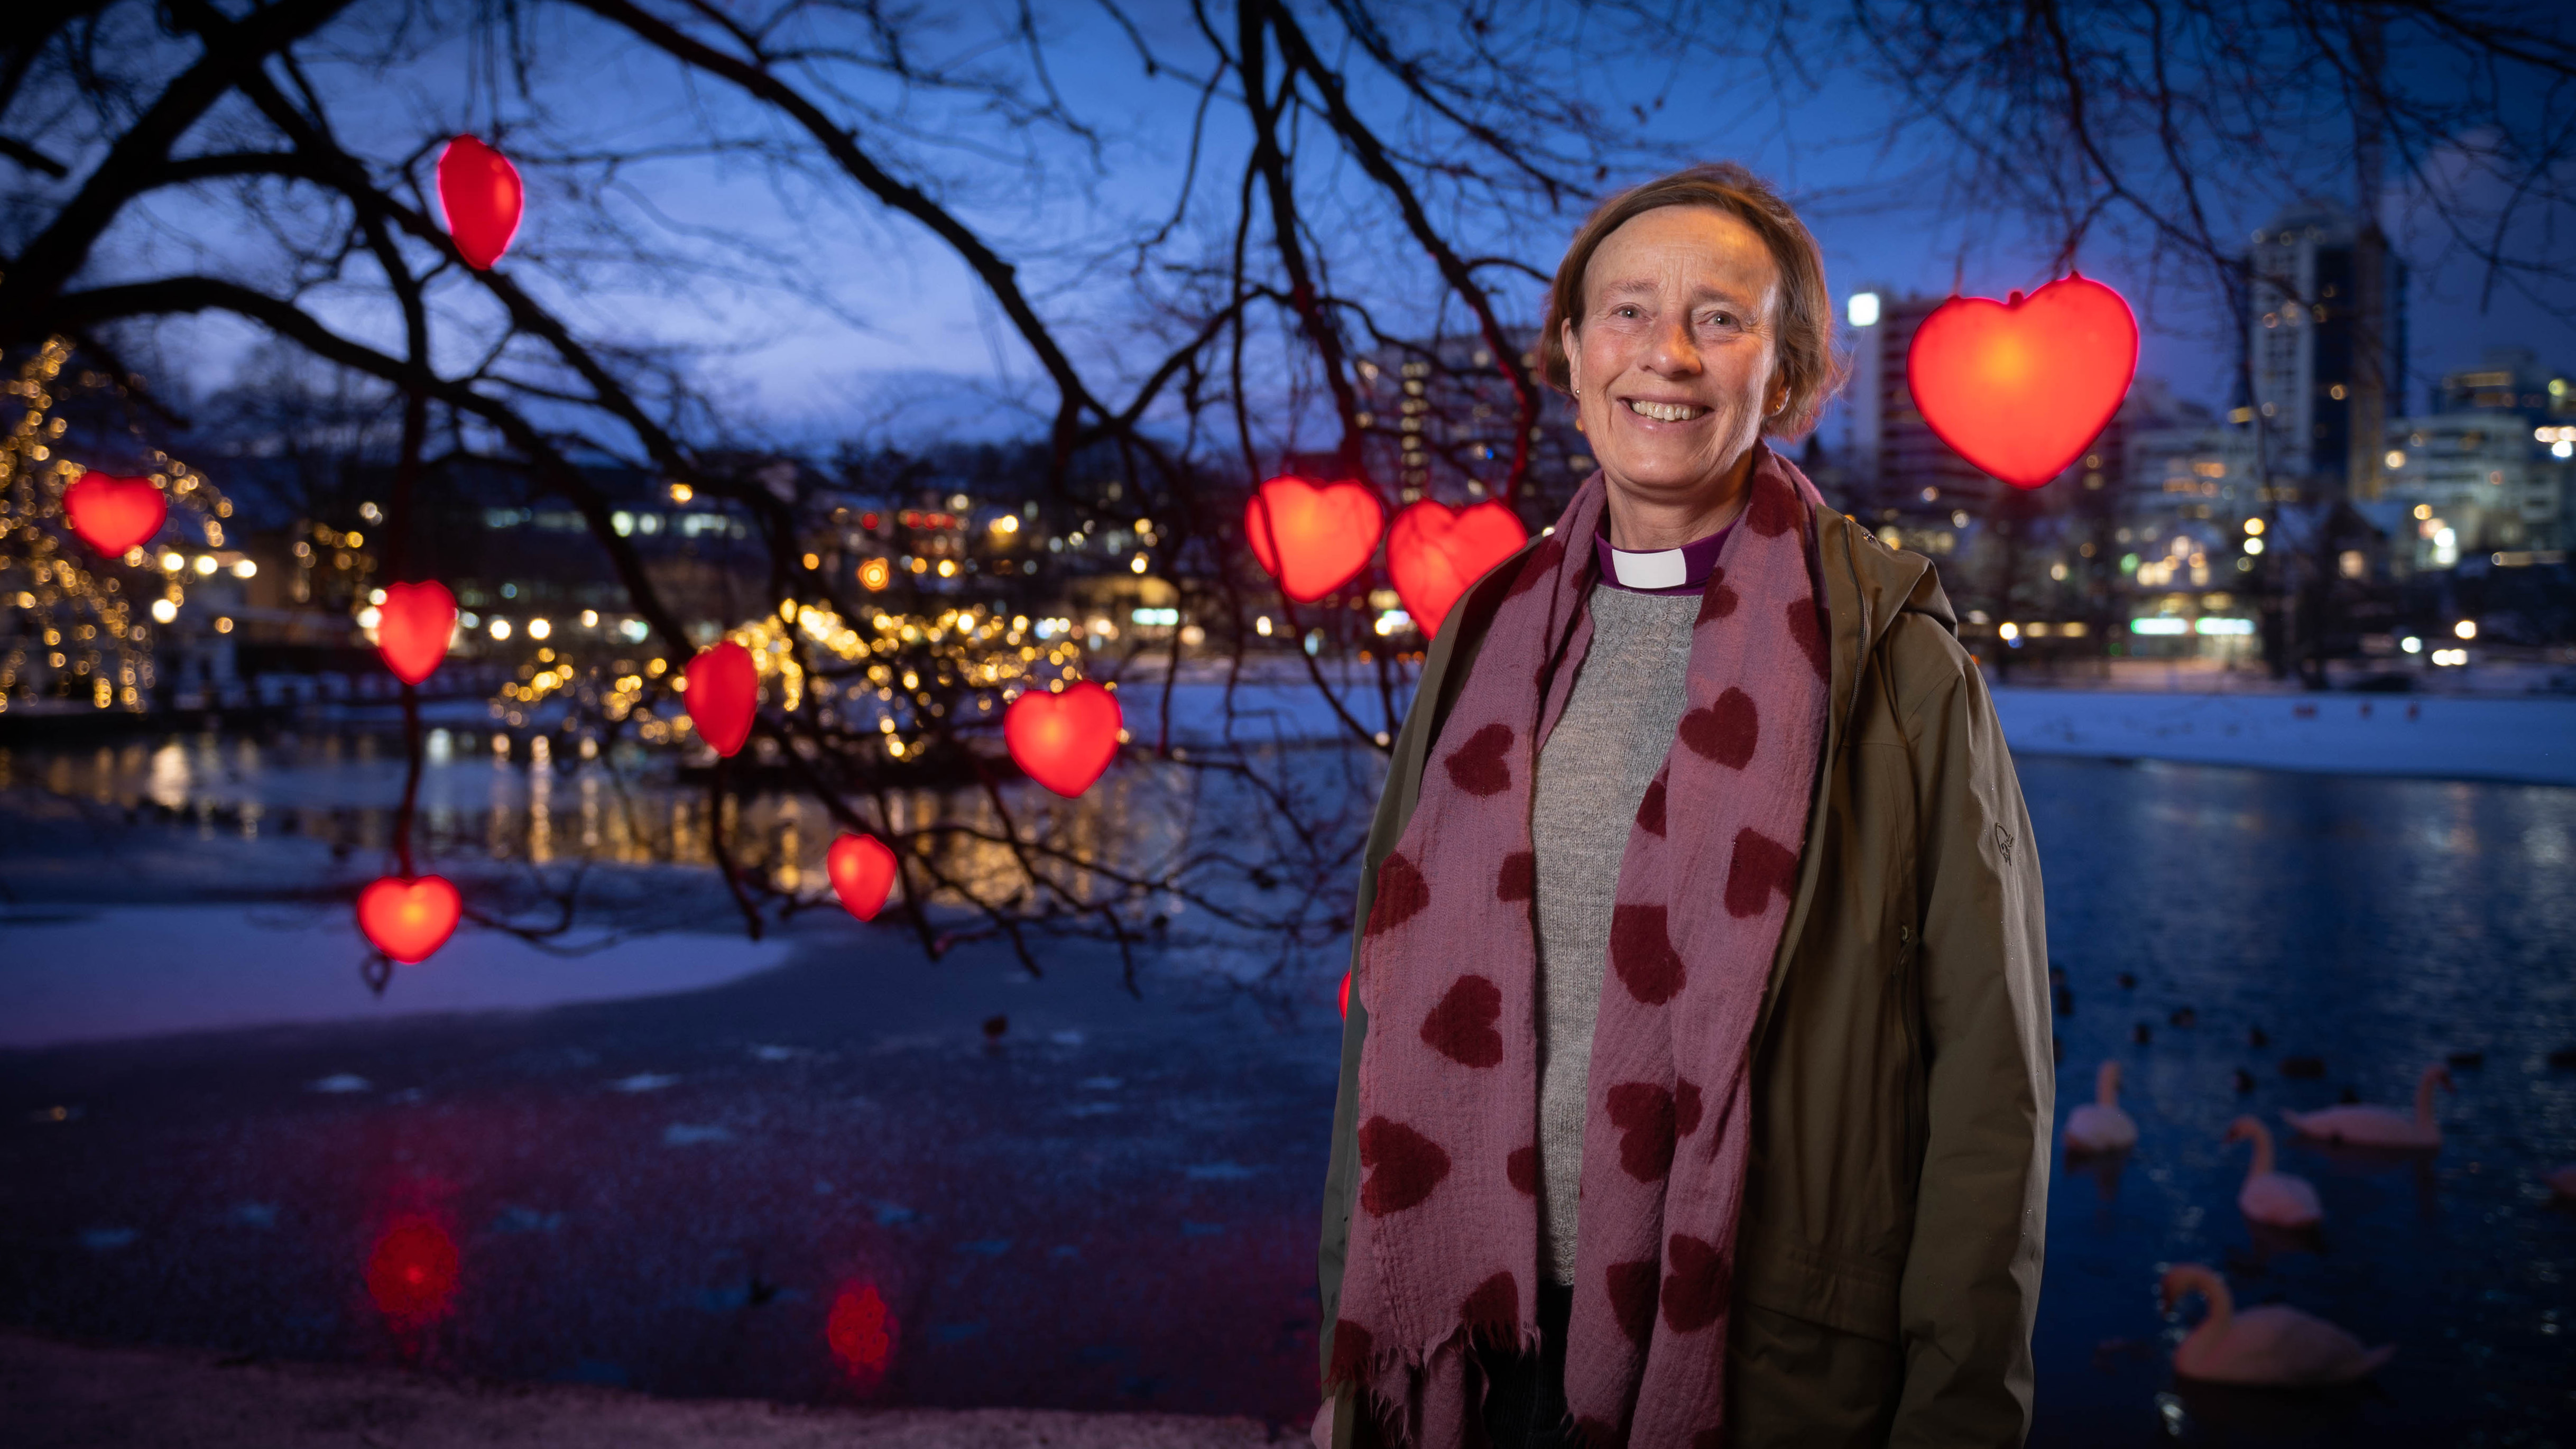 Biskop Anne Lise Ådnøy ønsker oss alle en velsignet jul.  Foto: Ivar Barane